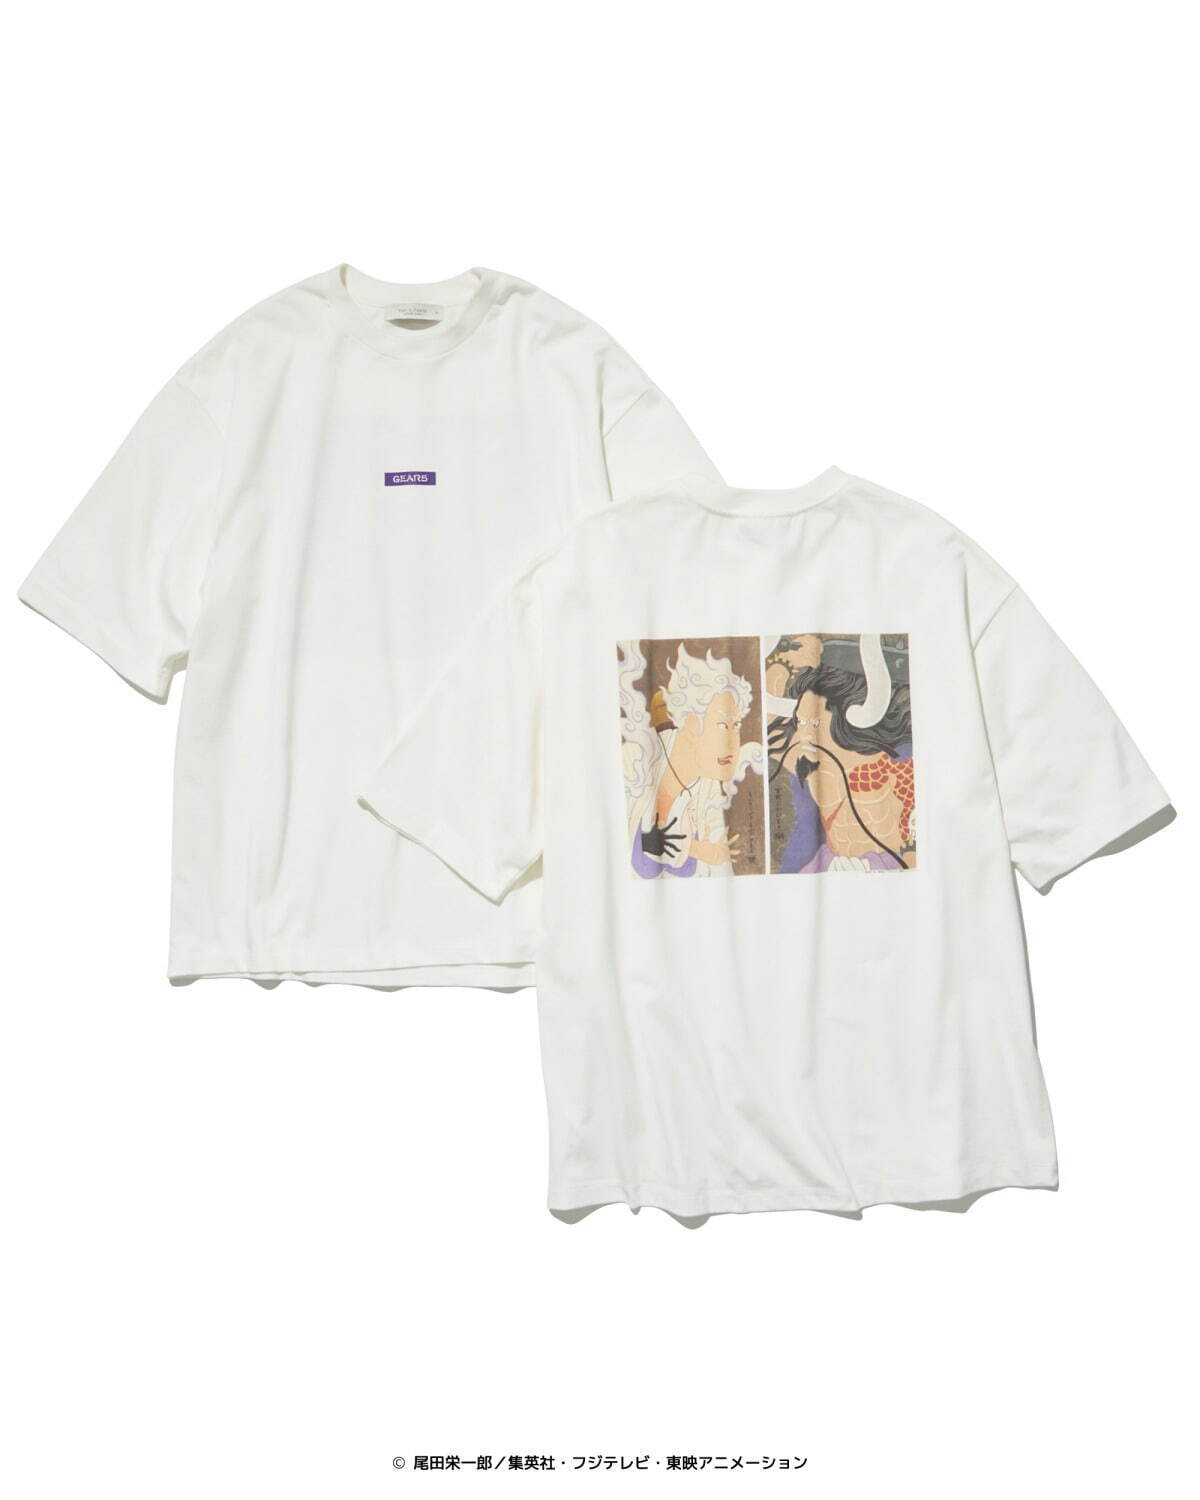 ONE PIECE ルフィ ギア5 バンド Tシャツ UNITED TOKYO12000円はいかがでしょうか